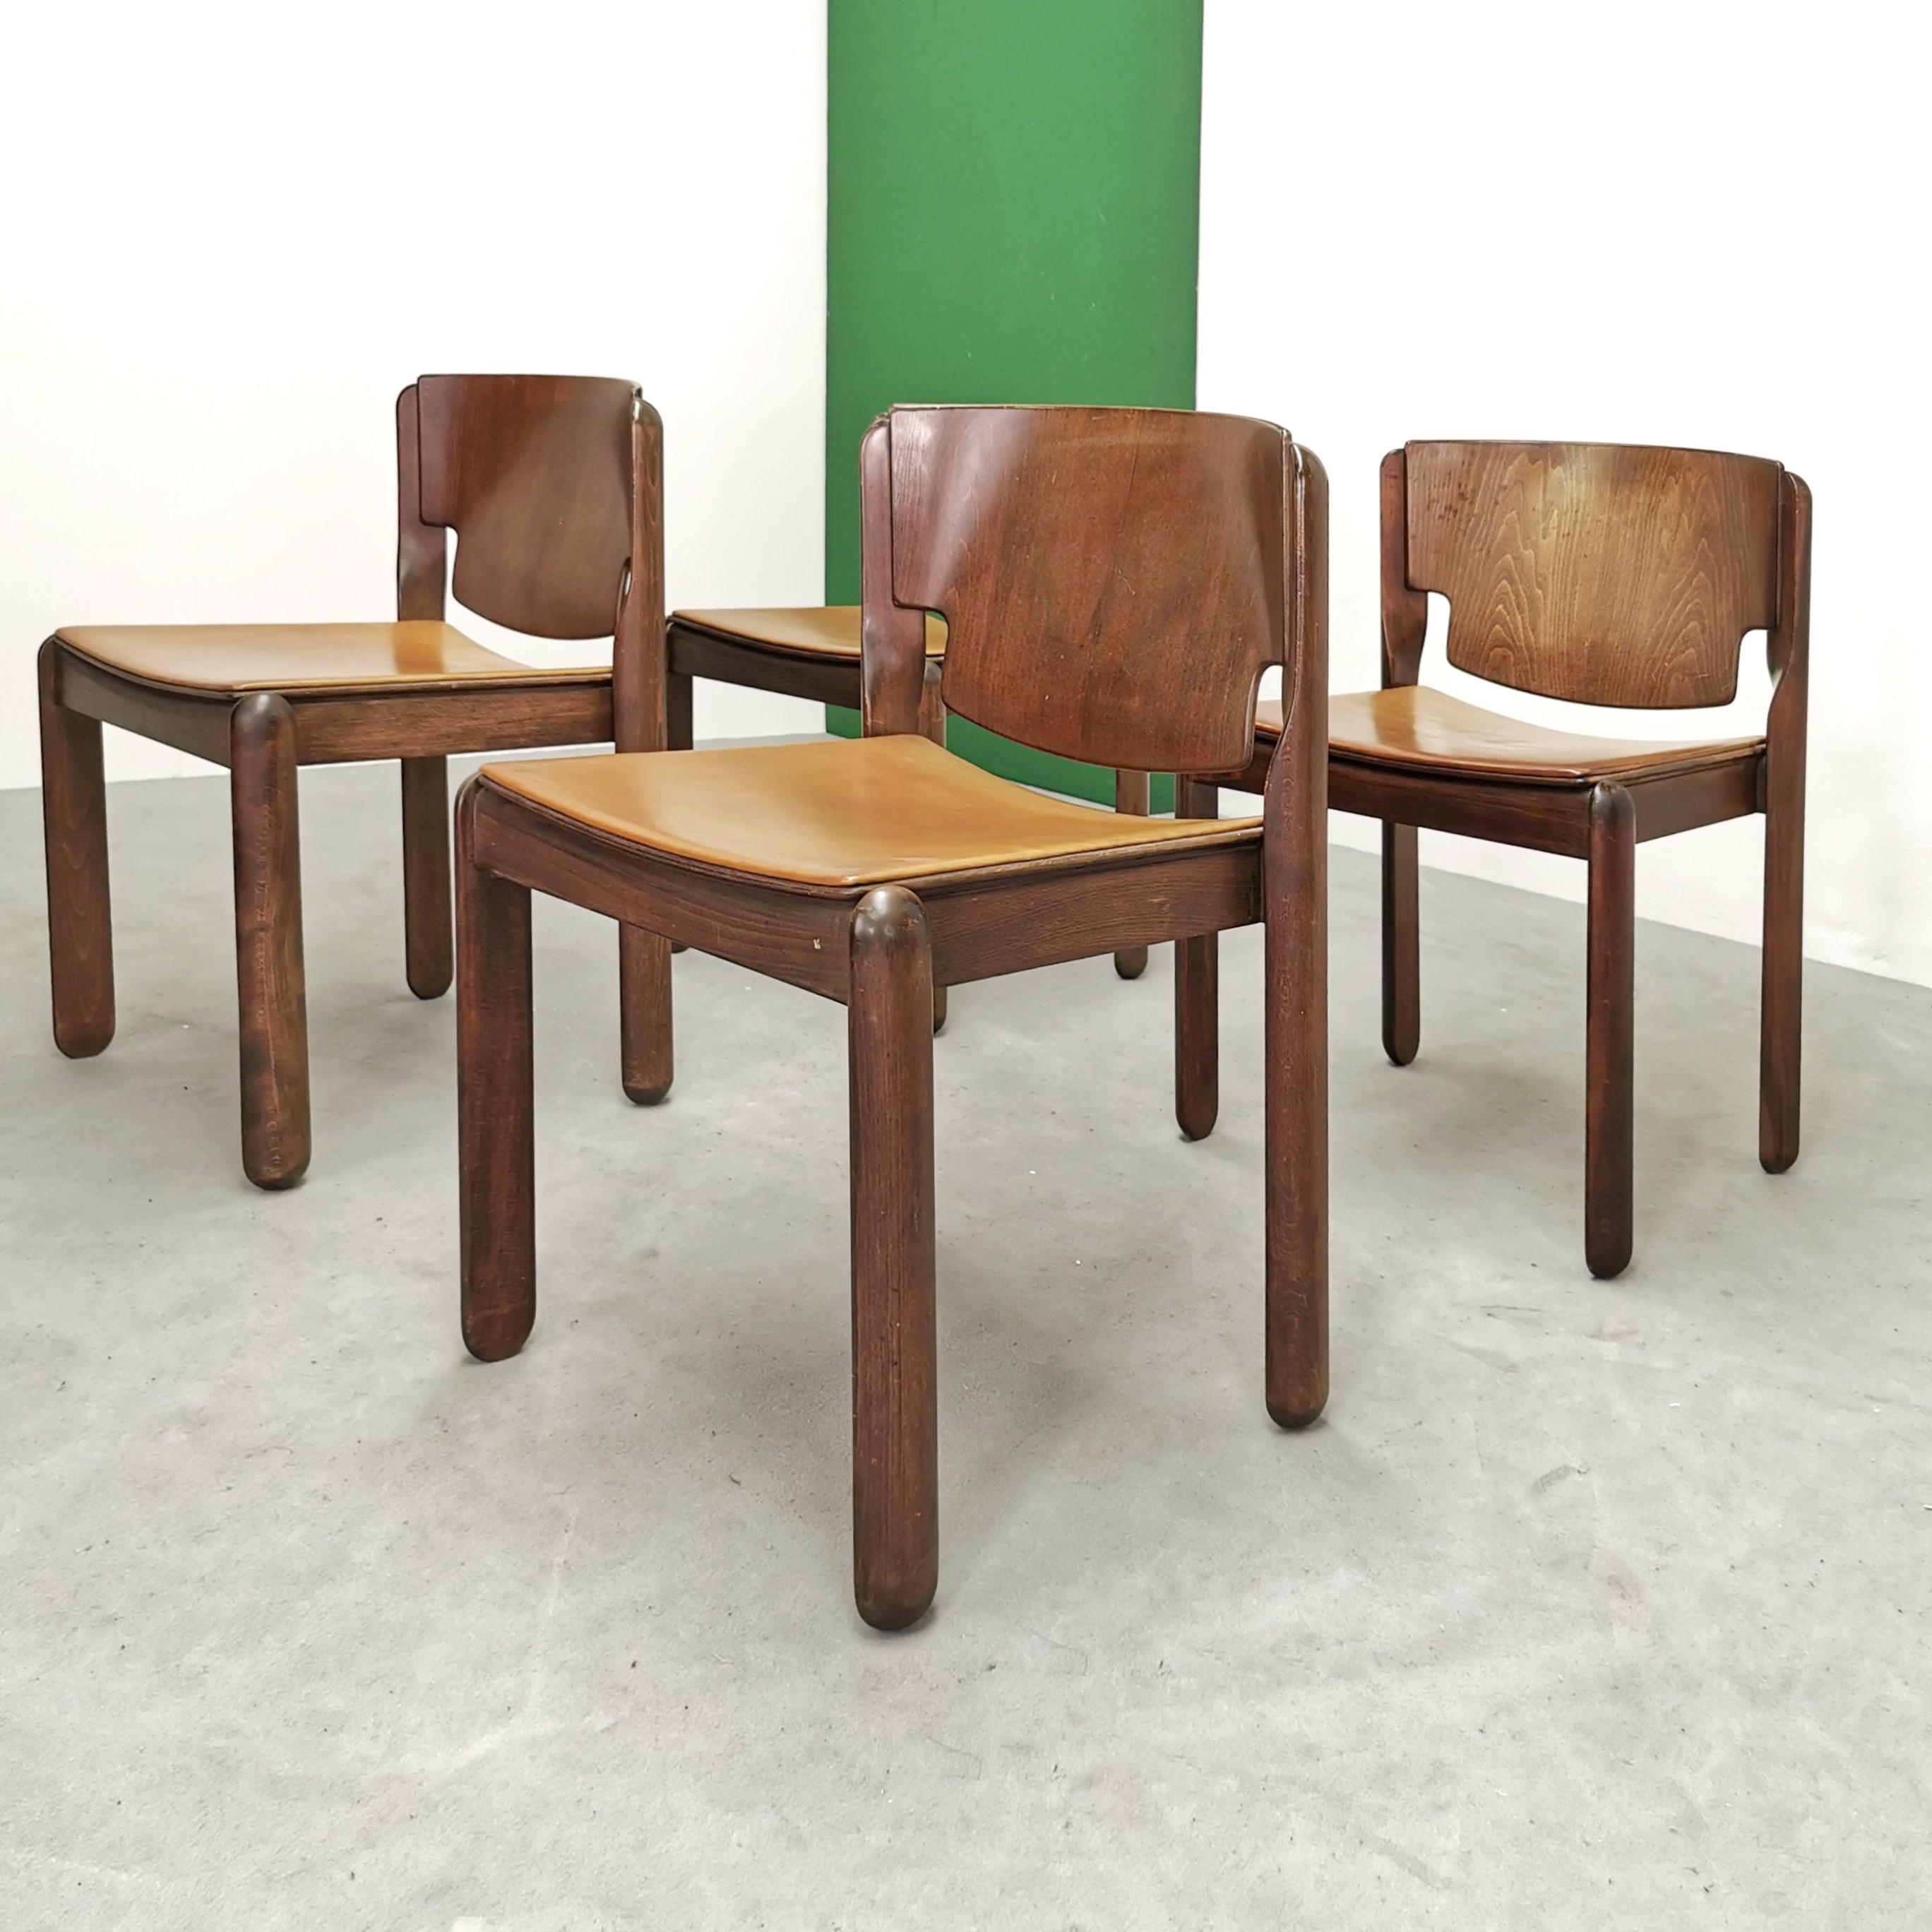 Le sedie Modello 122 sono una creazione del celebre designer italiano Vico Magistretti, noto per la sua capacità di combinare estetica moderna e funzionalità senza tempo
Realizzate da Cassina nel 1967, queste sedie rappresentano un pezzo autentico